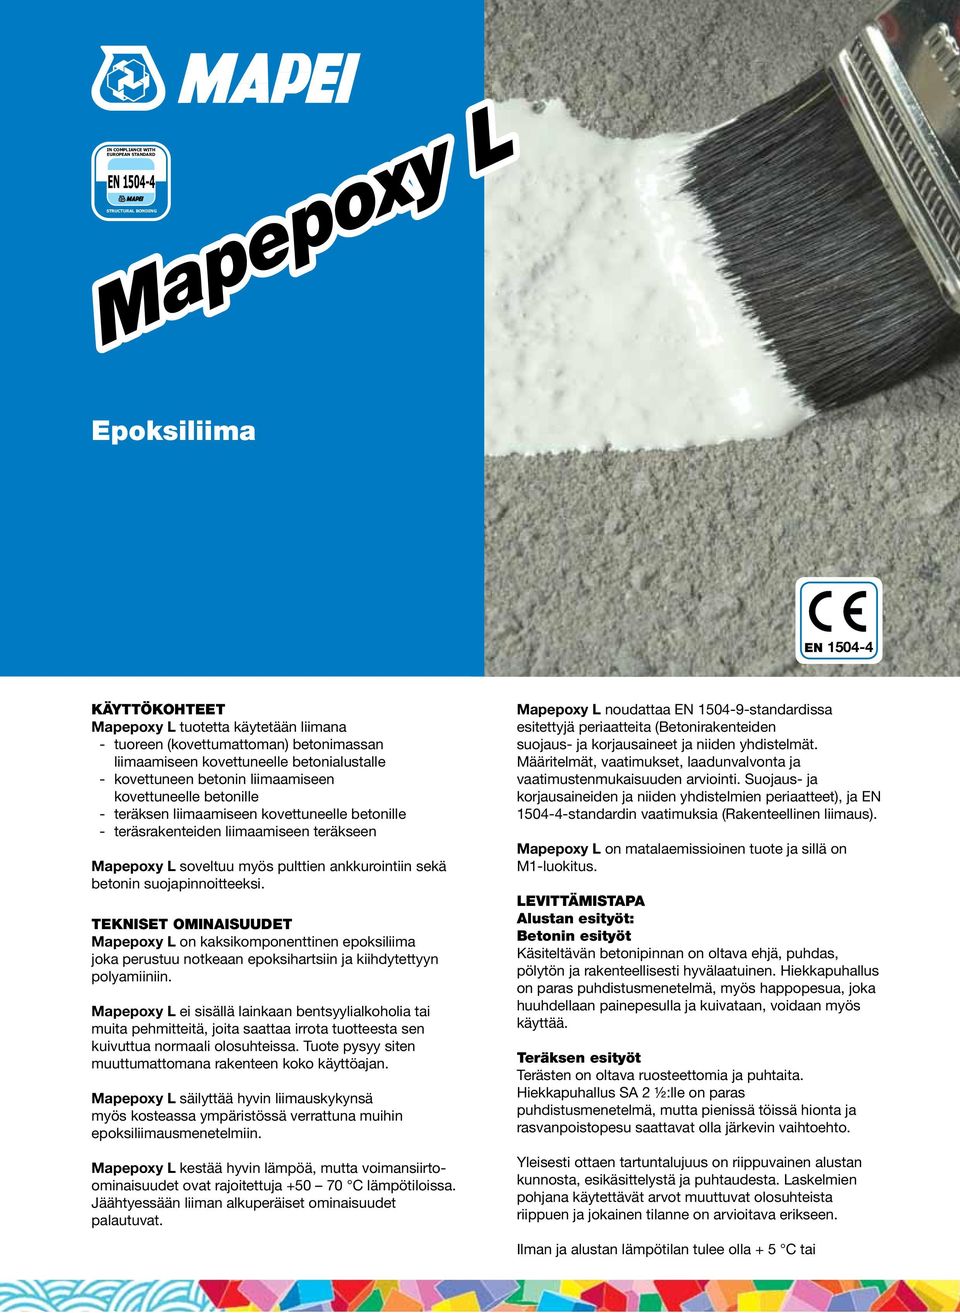 ankkurointiin sekä n suojapinnoitteeksi. TEKNISET OMINAISUUDET Mapepoxy L on kaksikomponenttinen epoksiliima joka perustuu notkeaan epoksihartsiin ja kiihdytettyyn polyamiiniin.